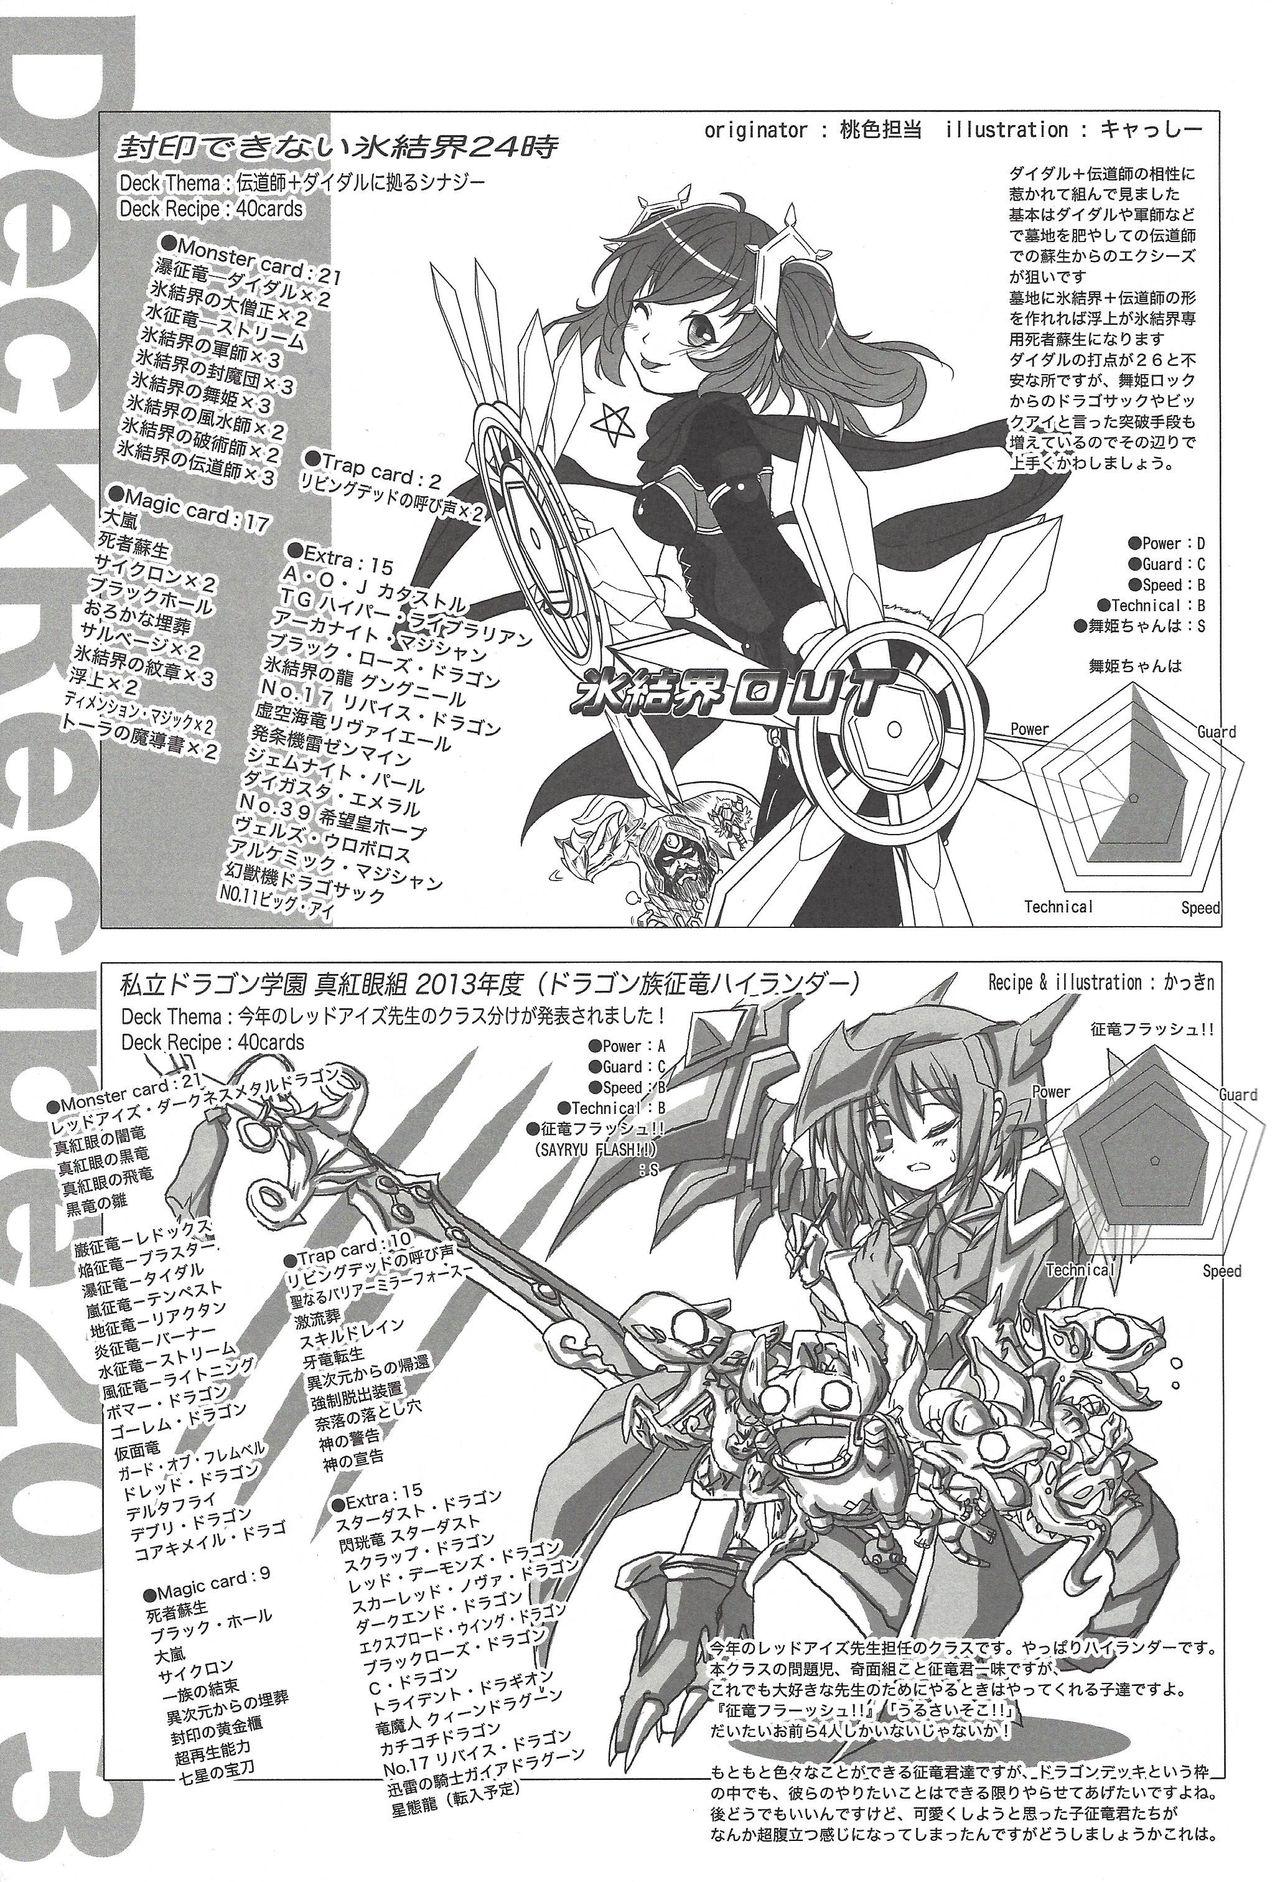 Flashing Instant issue Yu ☆ Gi ☆ Oh - Yu-gi-oh zexal Deutsch - Page 4